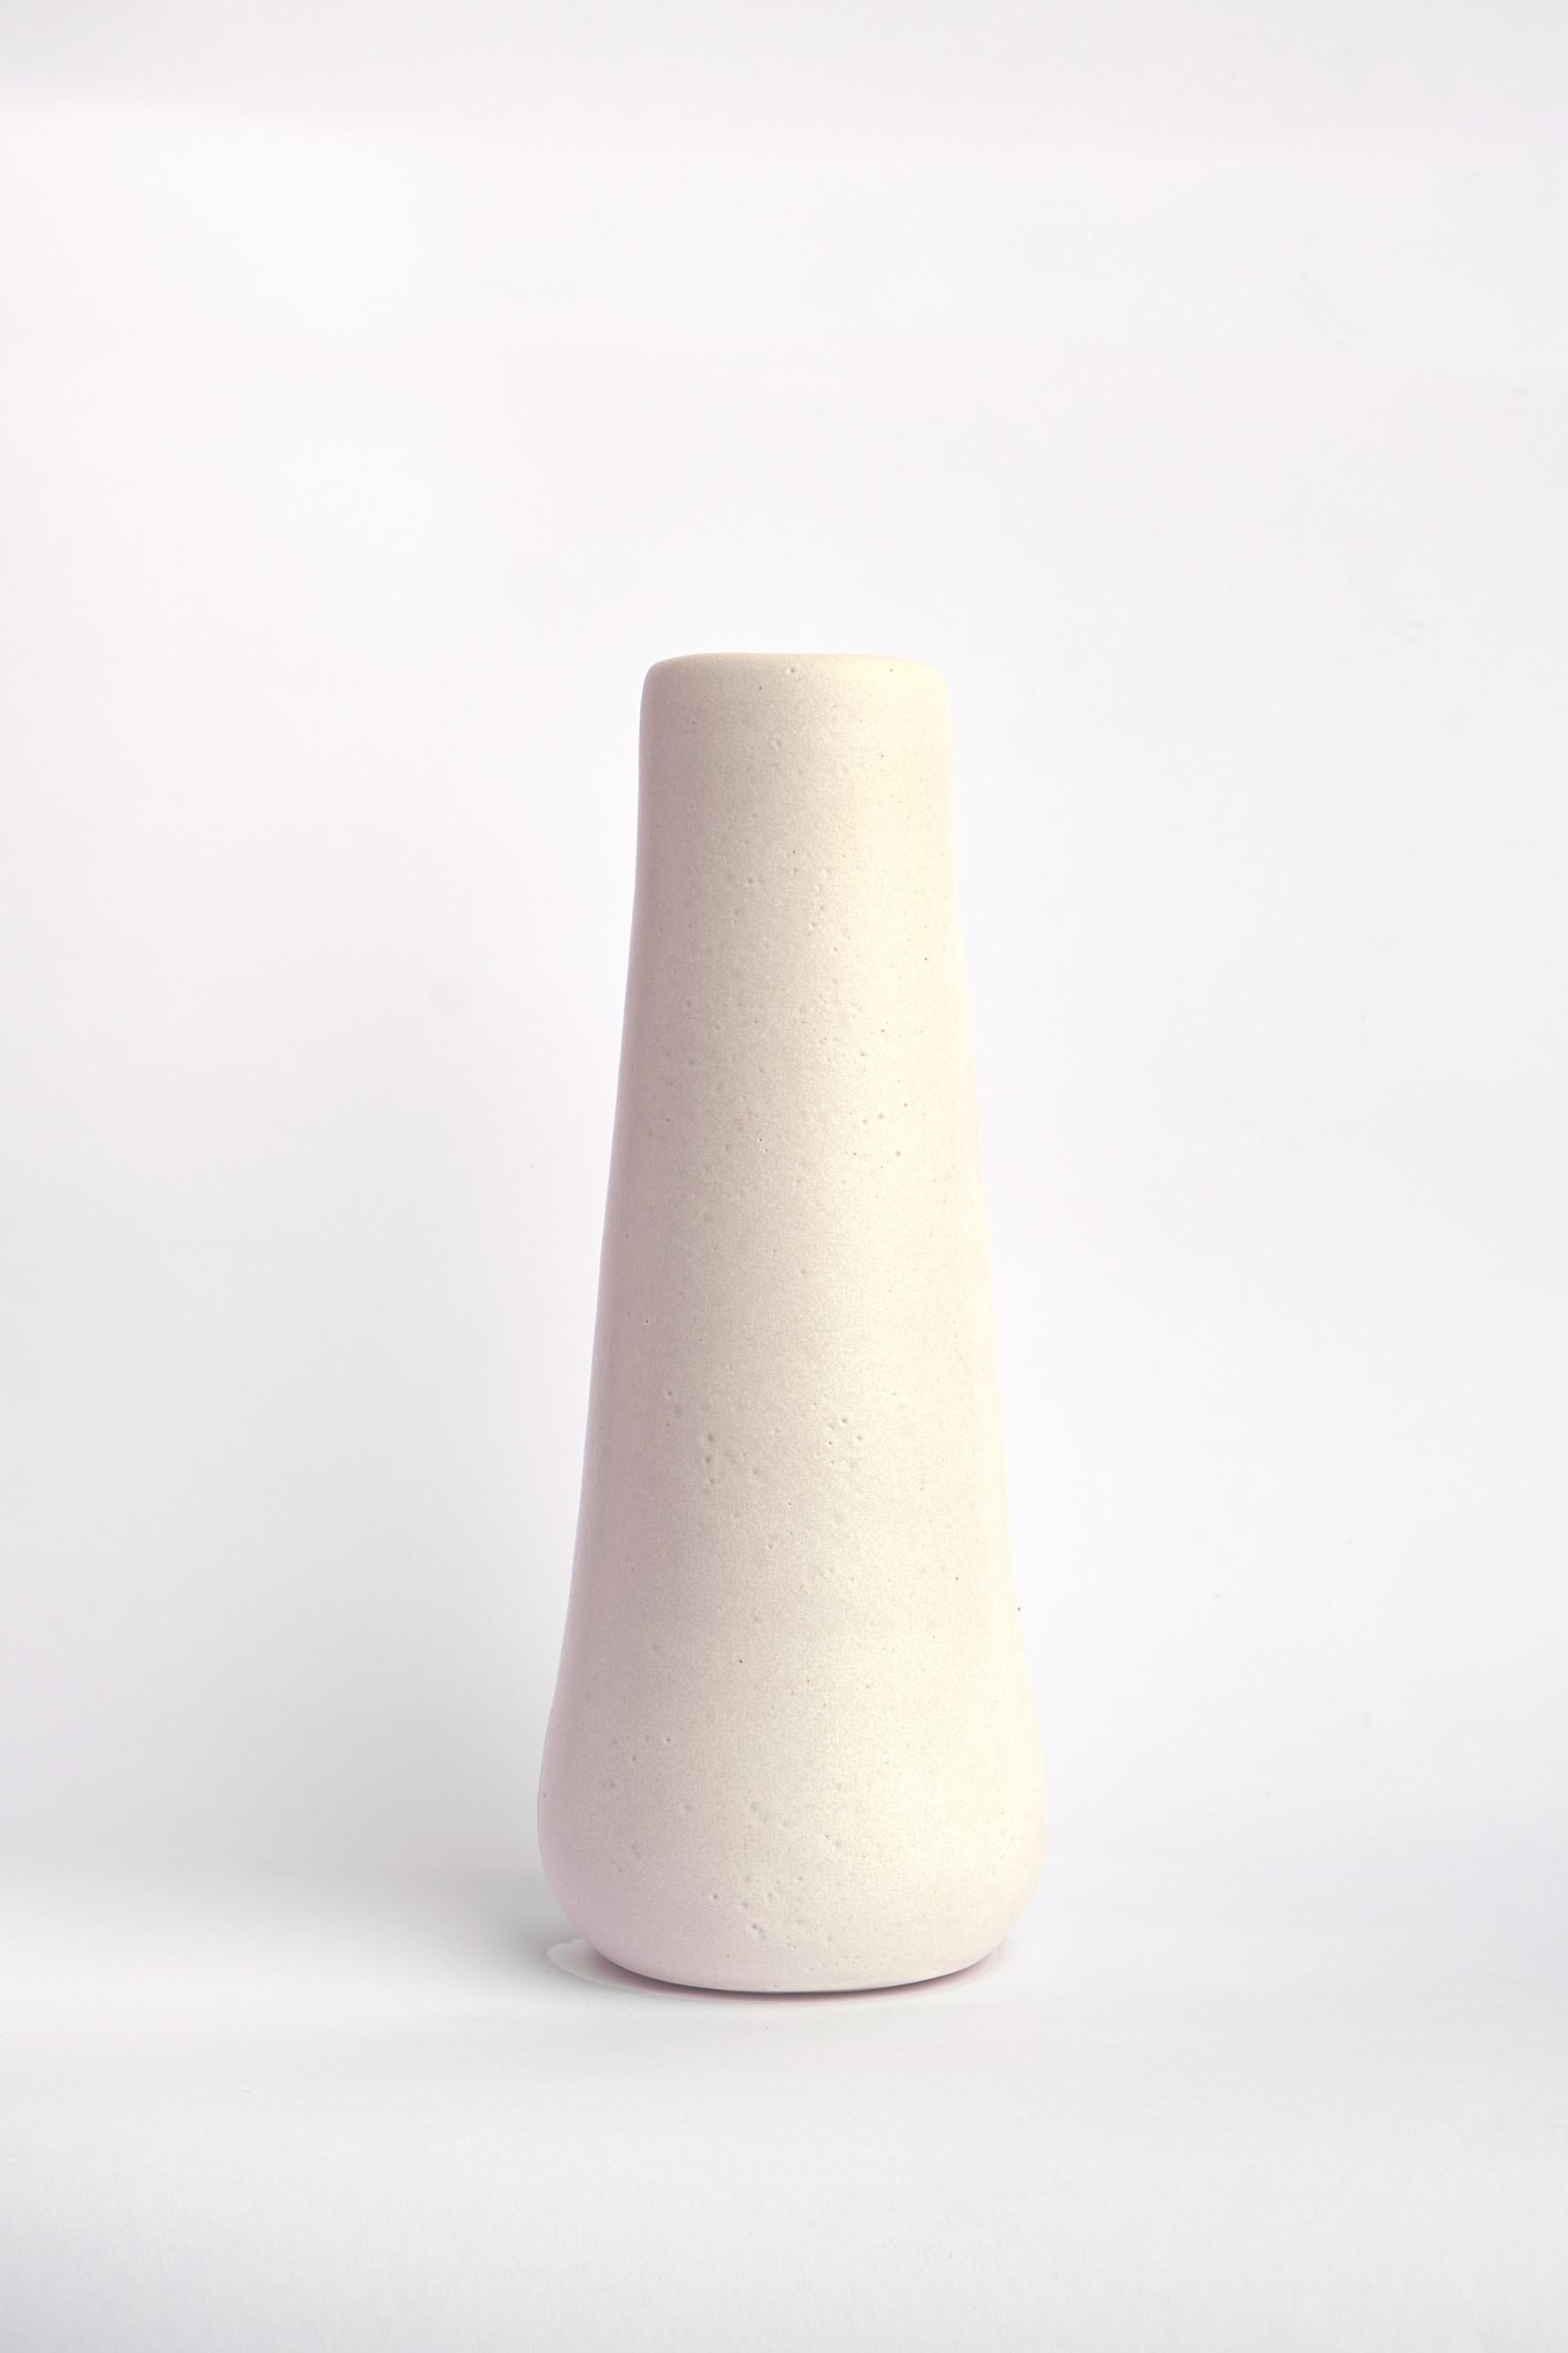 Vase Solitario II de Camila Apaez
Matériaux : Céramique
Dimensions : 10 x H 25 cm
Options : Os blanc, Chocolat, Noir charbon, Nature, Barro tostado.

Les photos supplémentaires ne sont que des références pour d'autres possibilités de couleurs : Os